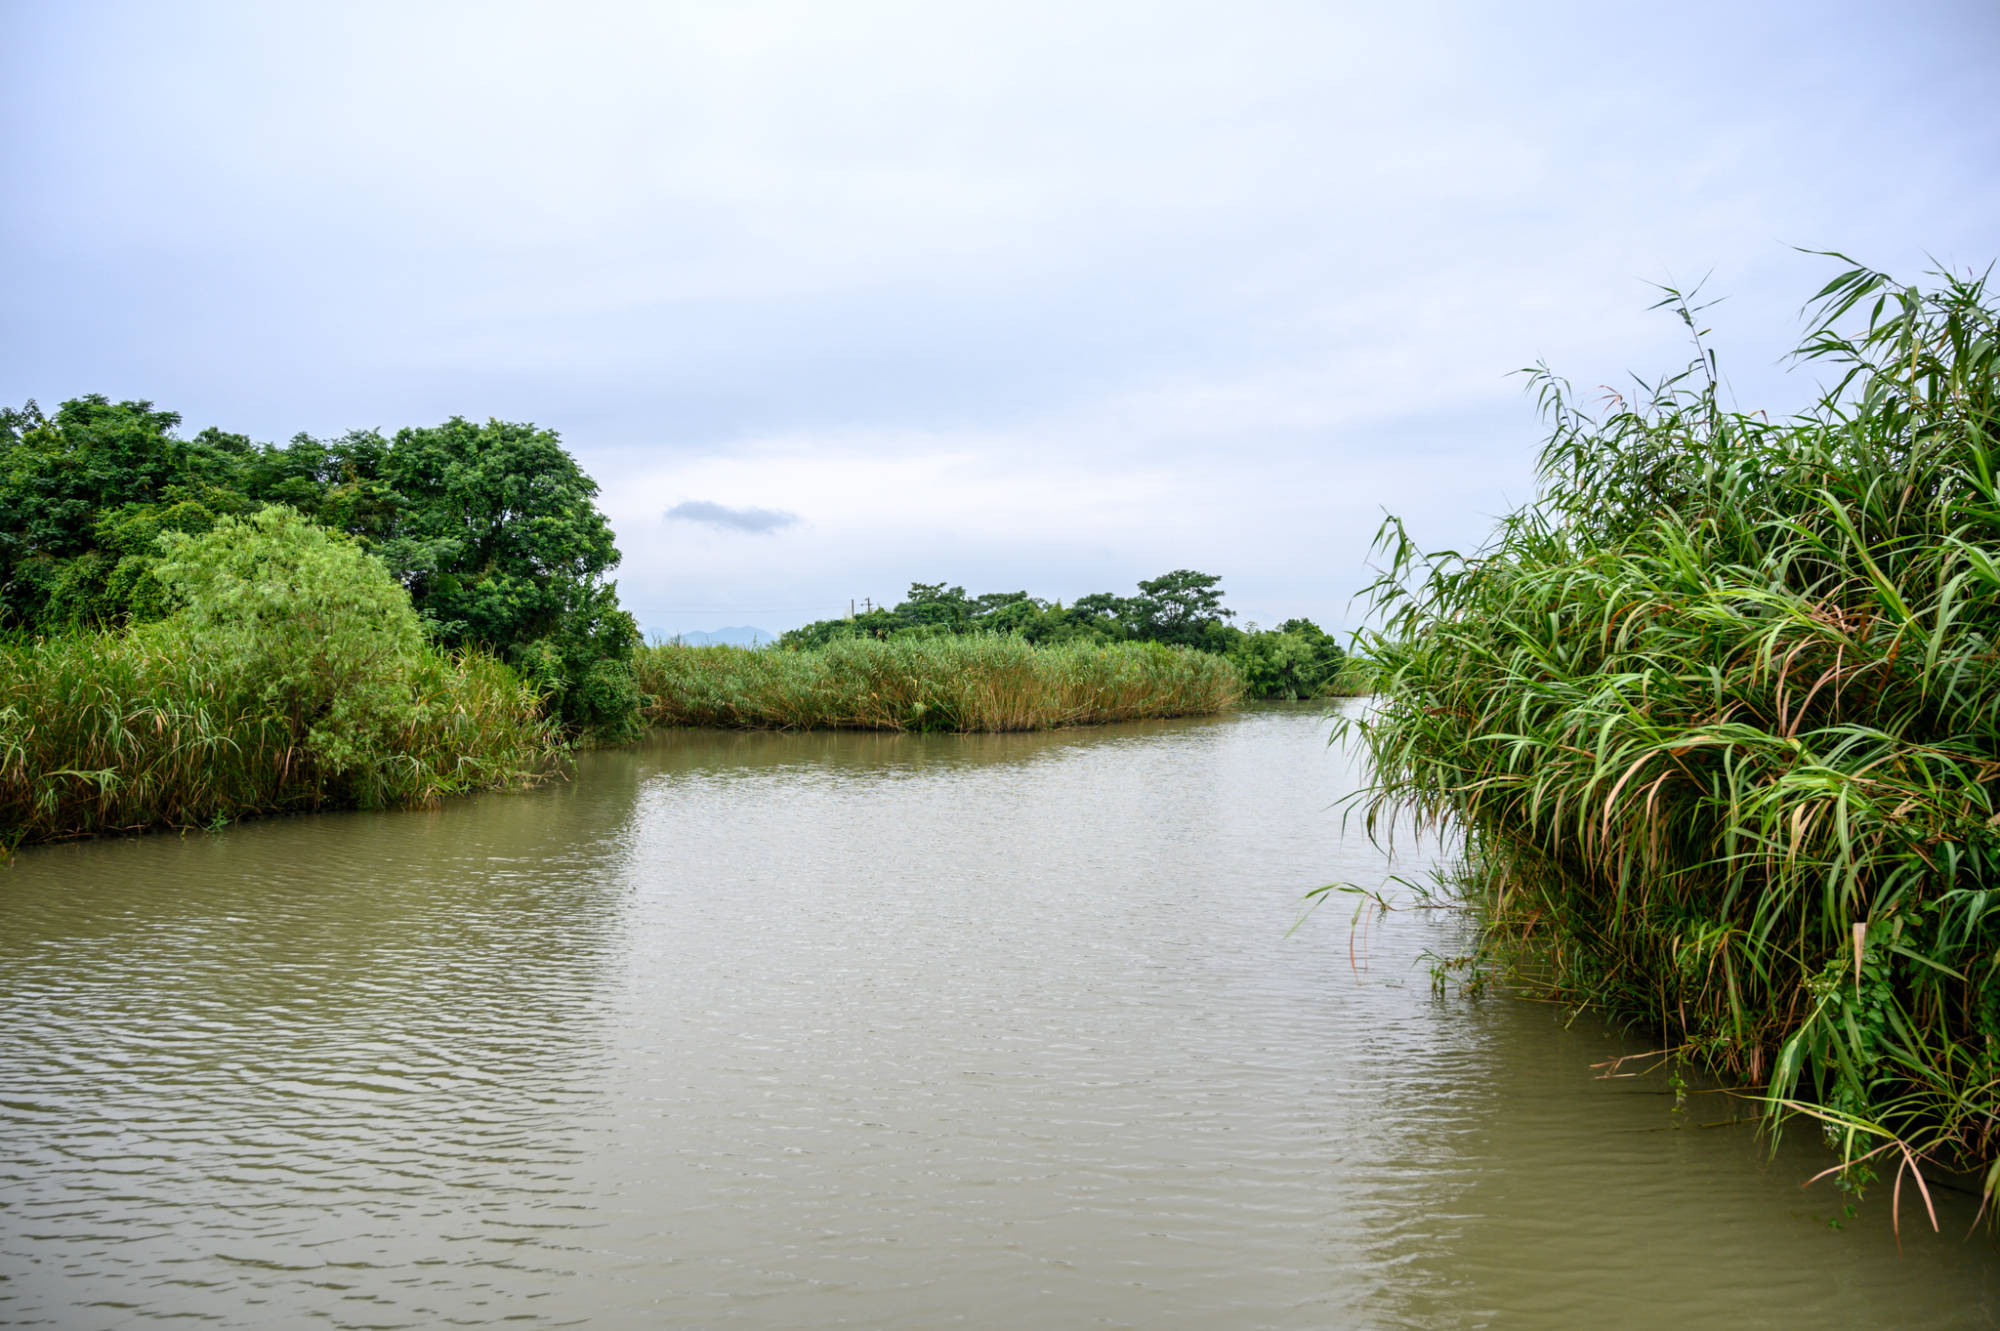 德清下渚湖,一处原生态的天然湿地秘境,被誉为中国最美湿地